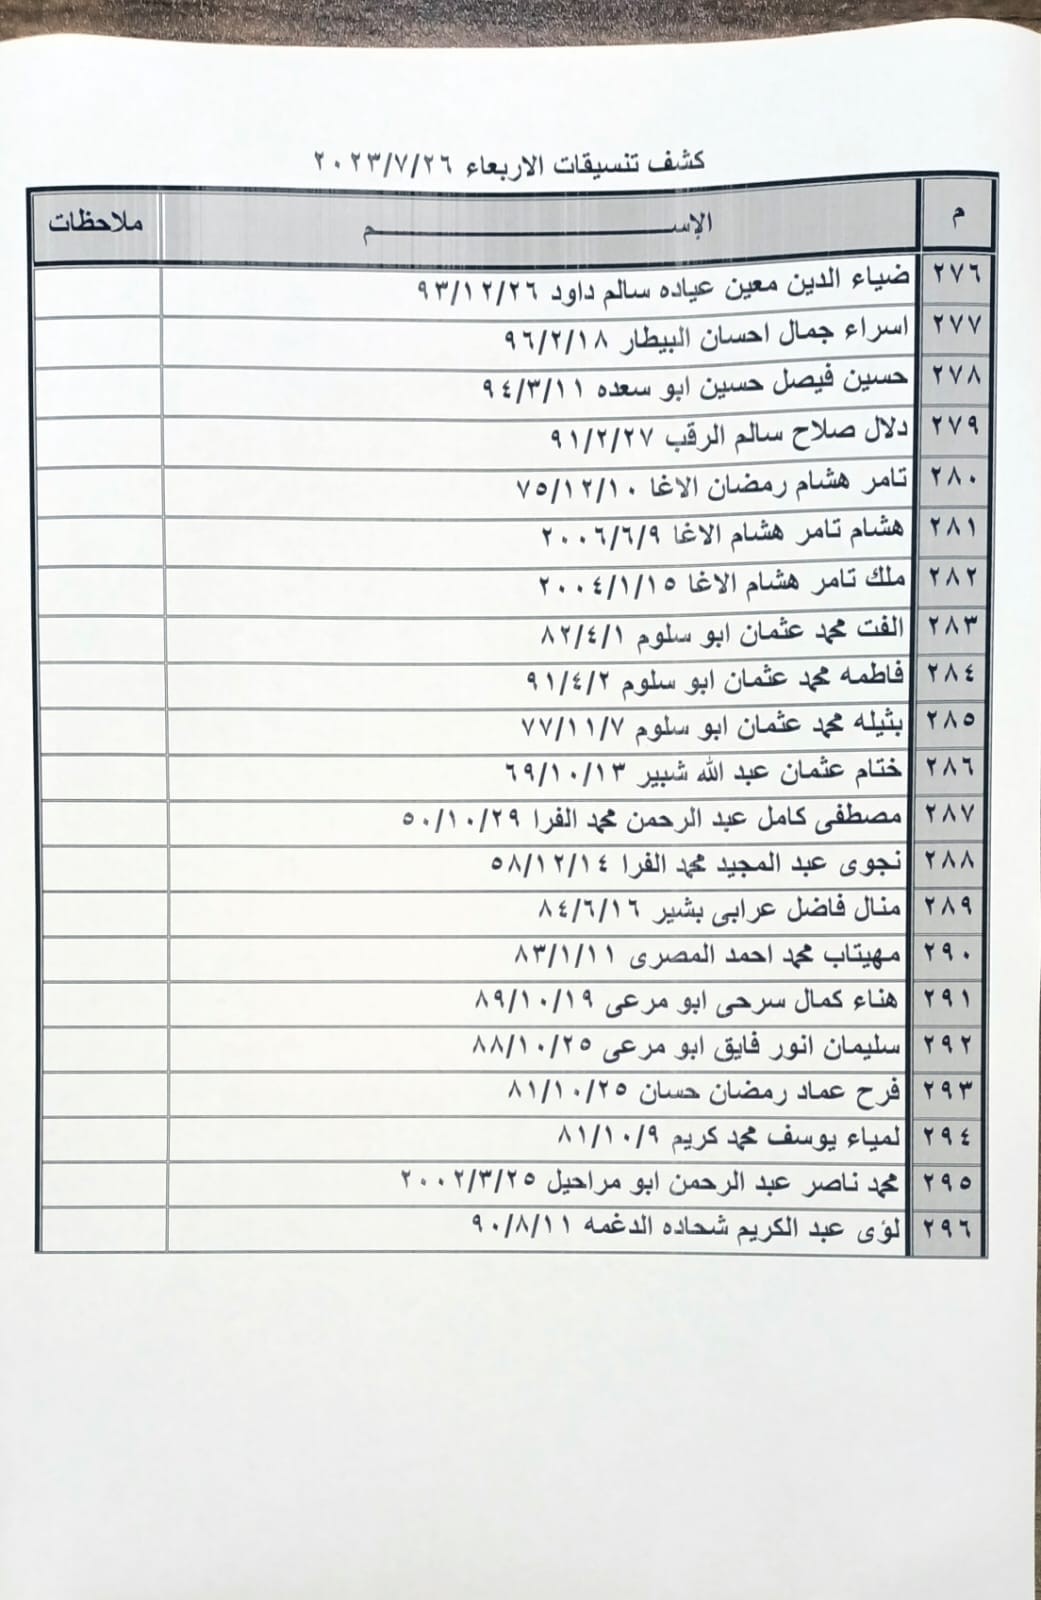 بالأسماء: كشف "التنسيقات المصرية" للسفر عبر معبر رفح الأربعاء 26 يوليو 2023